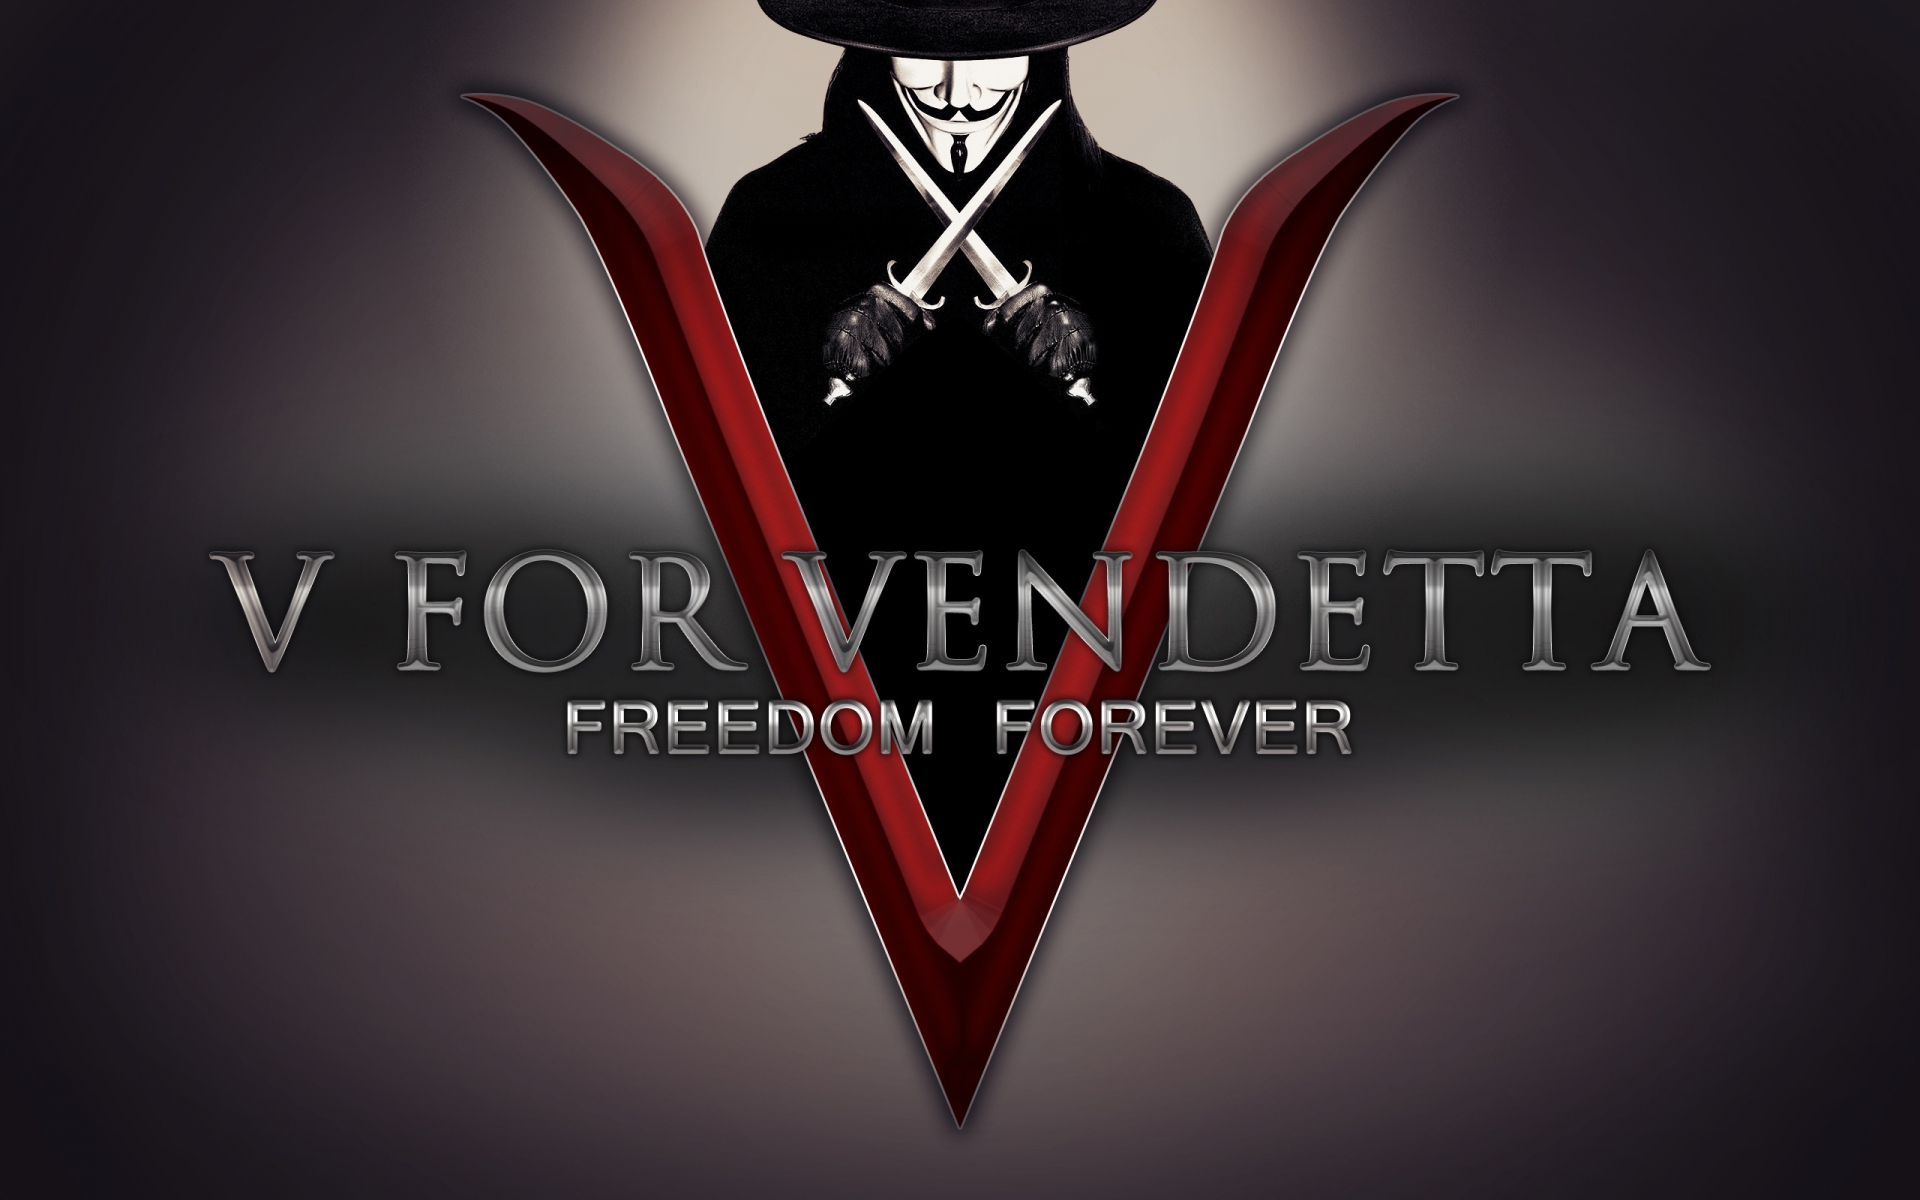 V for Vendetta Freedom Forever for 1920 x 1200 widescreen resolution